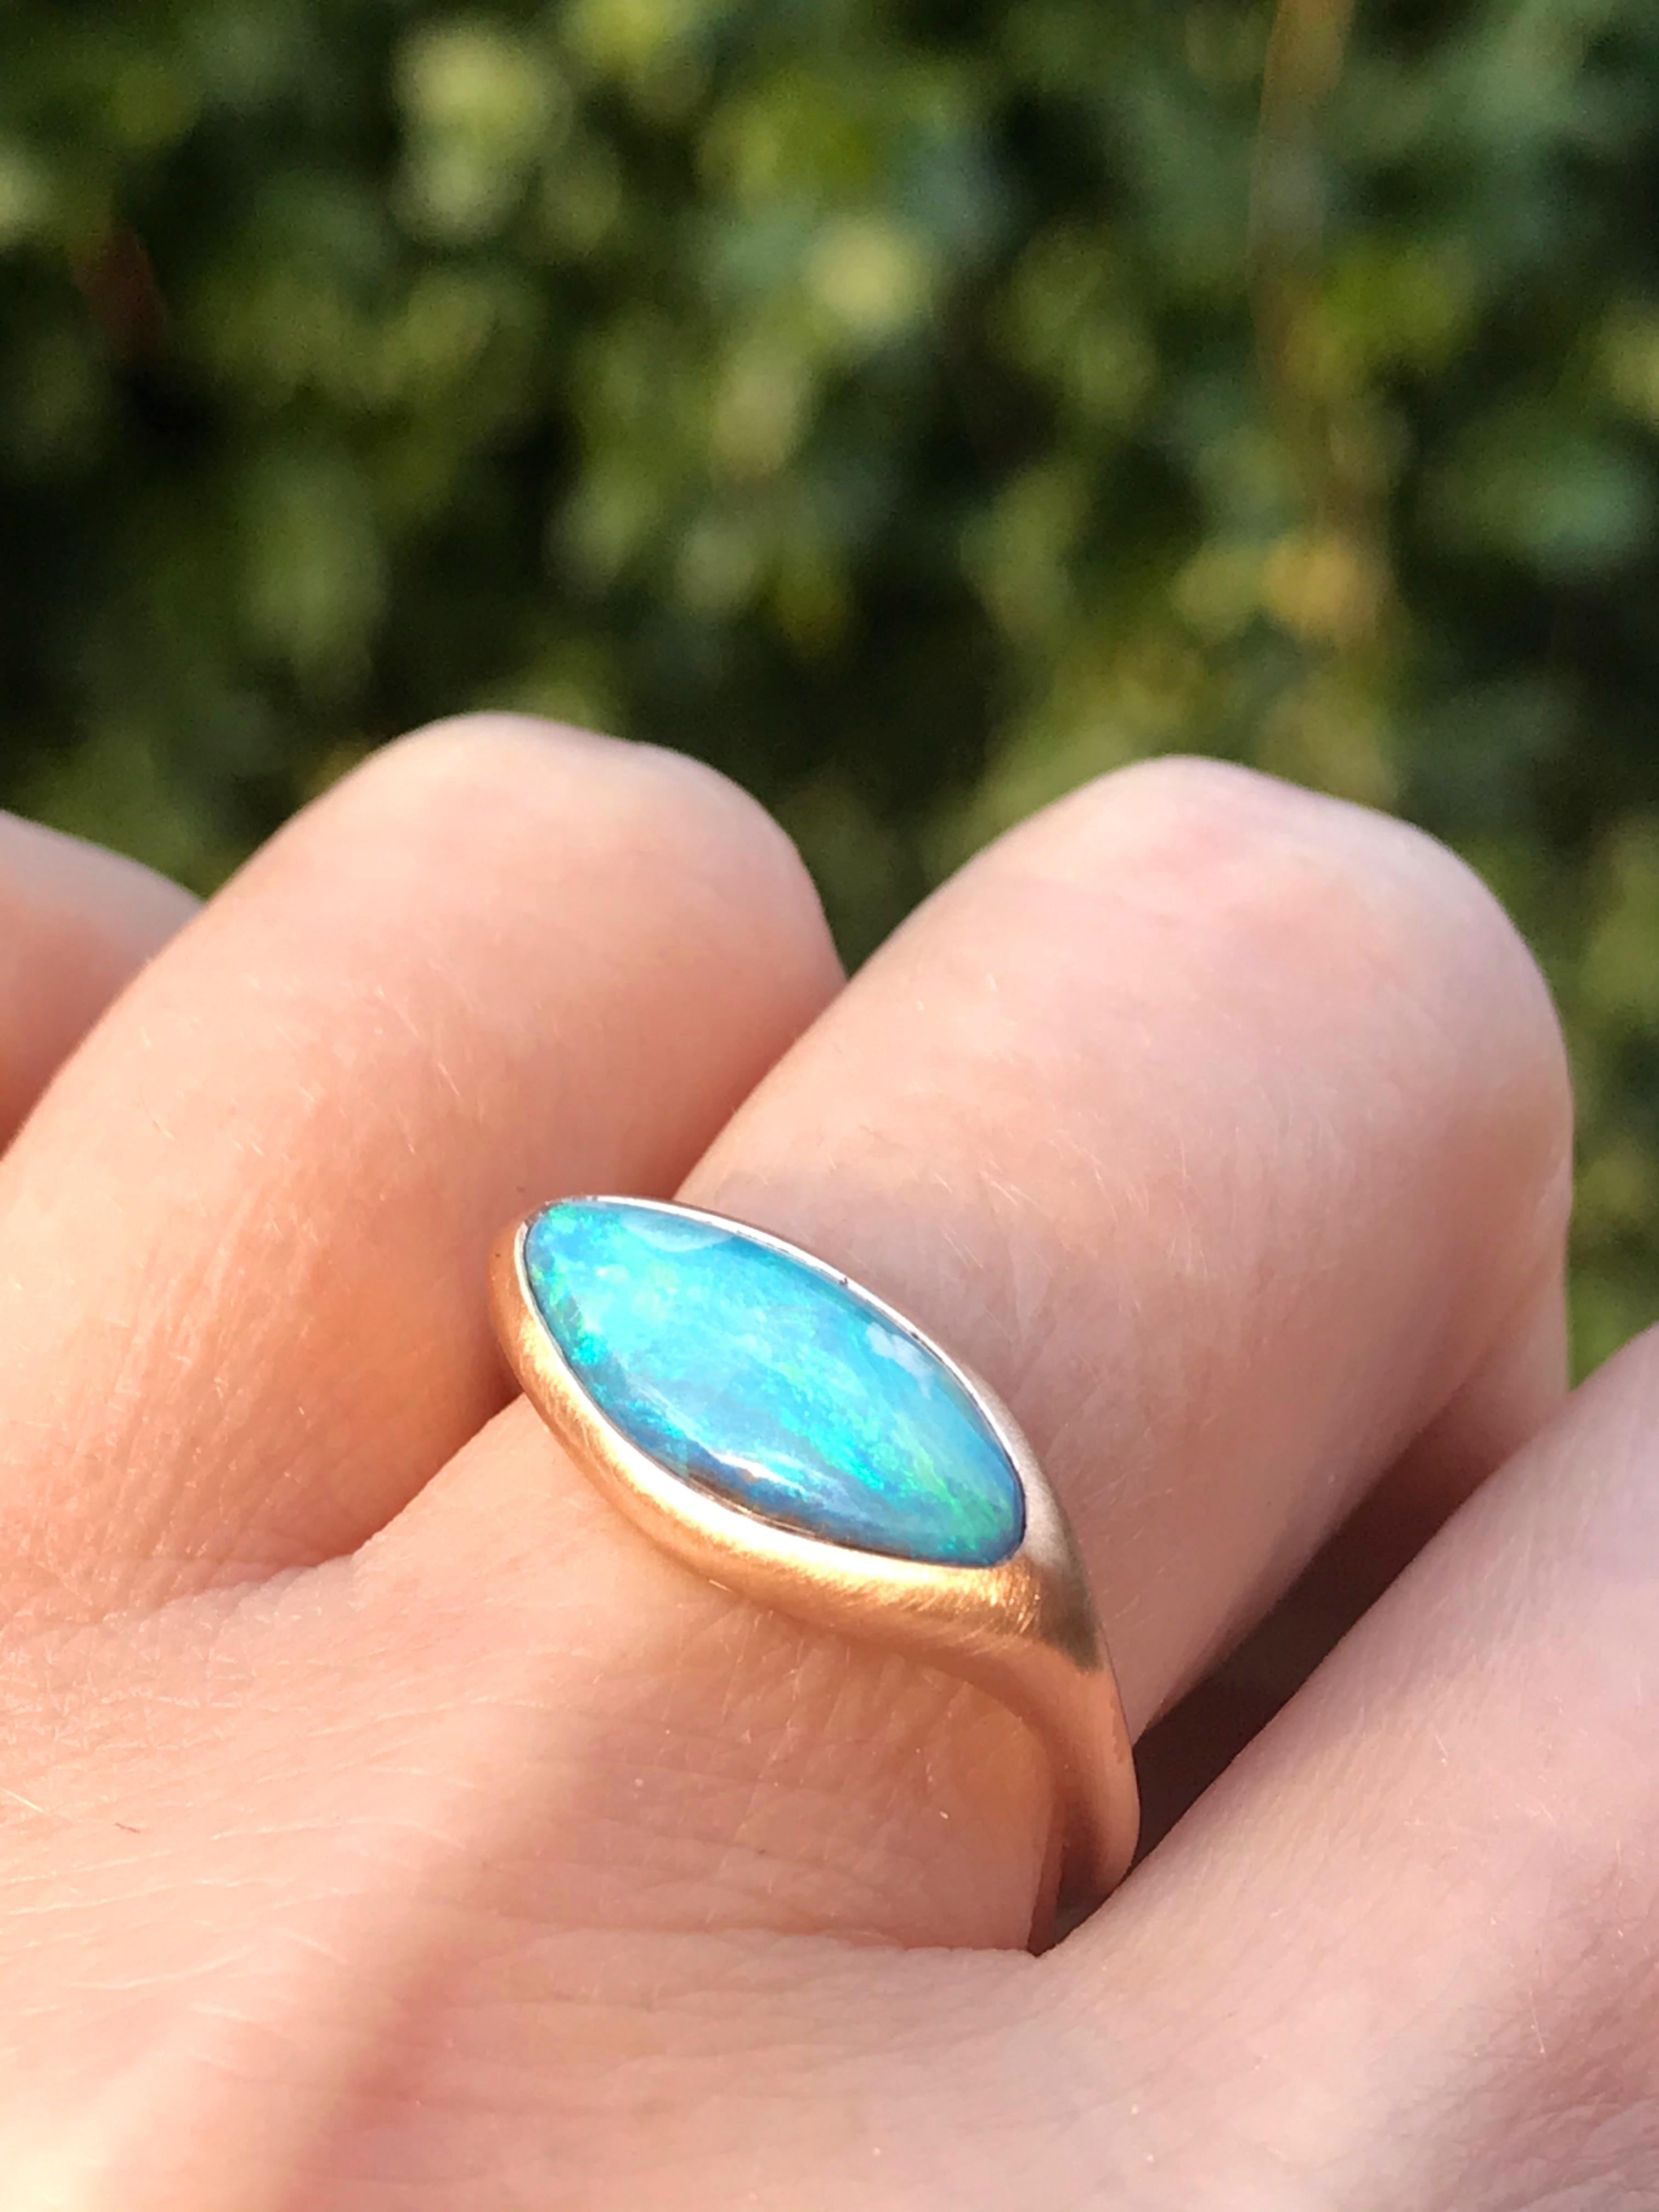 boulder opal blue nile